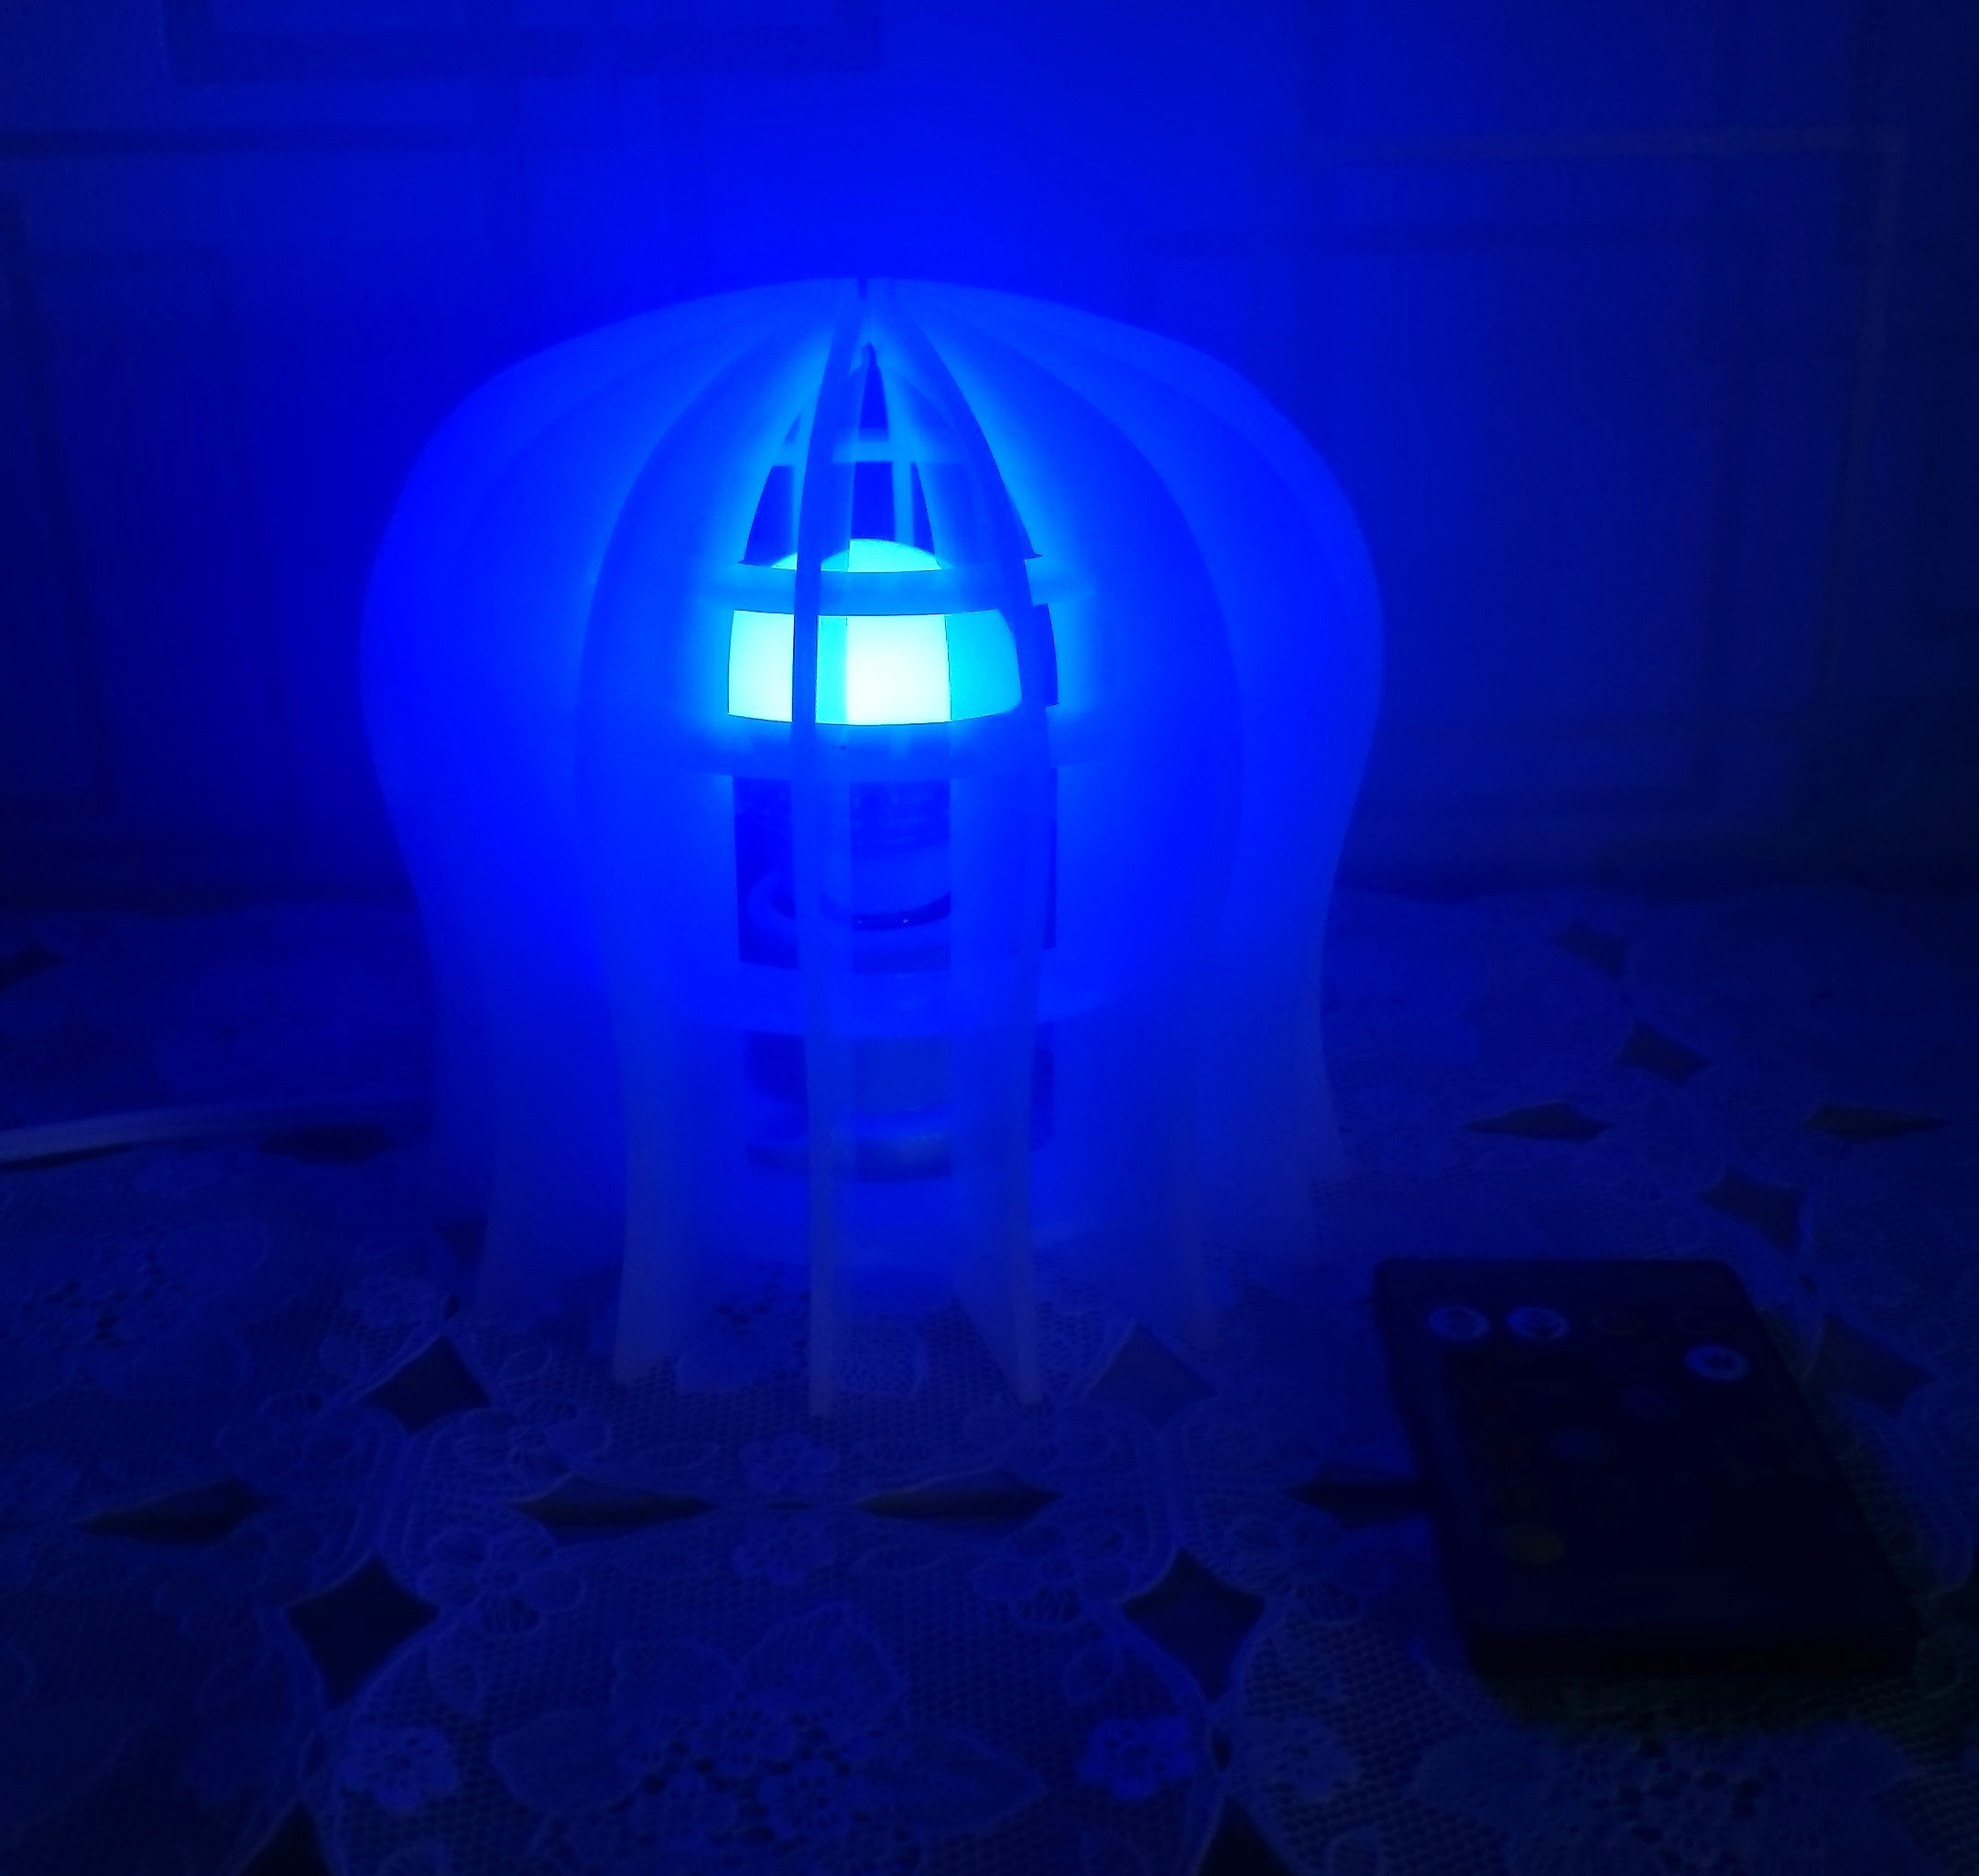 イルミネーションランプシェードアクリル 丸型 16色変色ランプ ソケット付き 据え置きタイプ Iichi ハンドメイド クラフト作品 手仕事品の通販